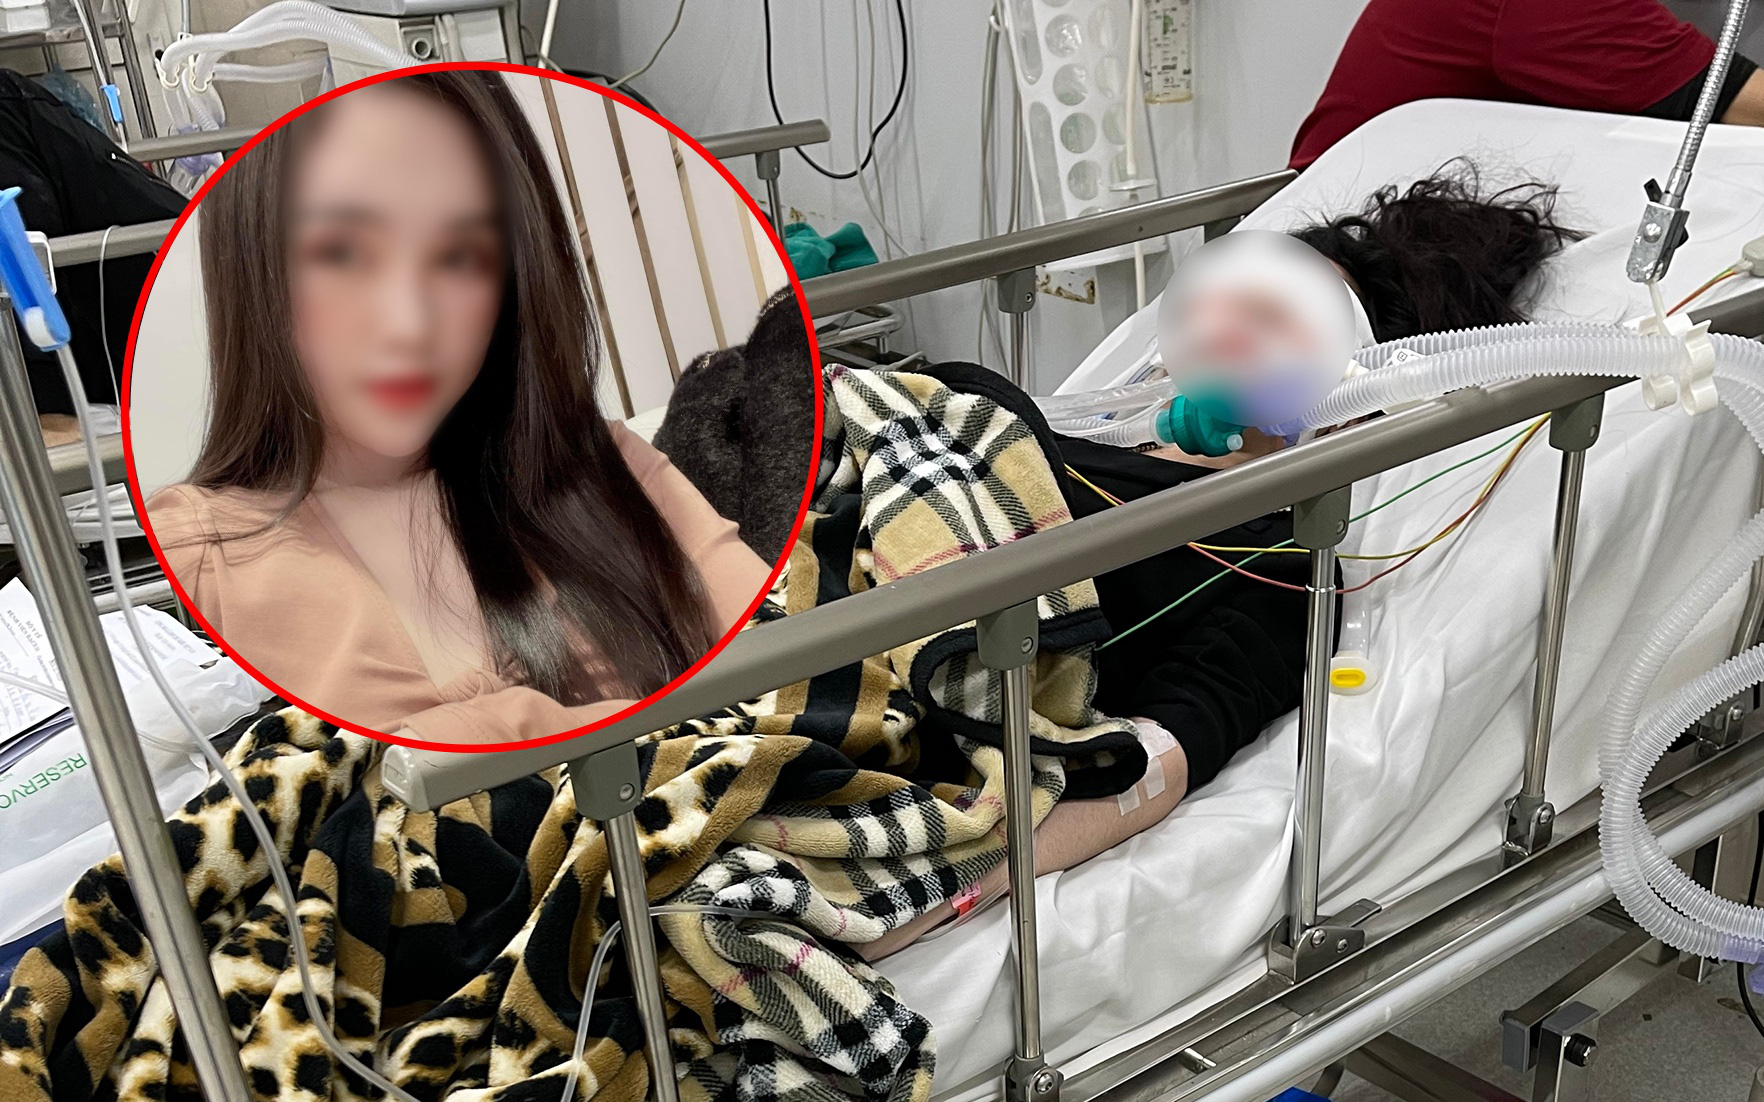 THẨM MỸ VIỆN HOÀNG MINH PHONG, tin tức Mới nhất Cô gái 22 tuổi đối mặt nguy cơ trở thành người thực vật sau khi đi phẫu thuật thẩm mỹ - Đọc tin tuc tại Kenh14.vn